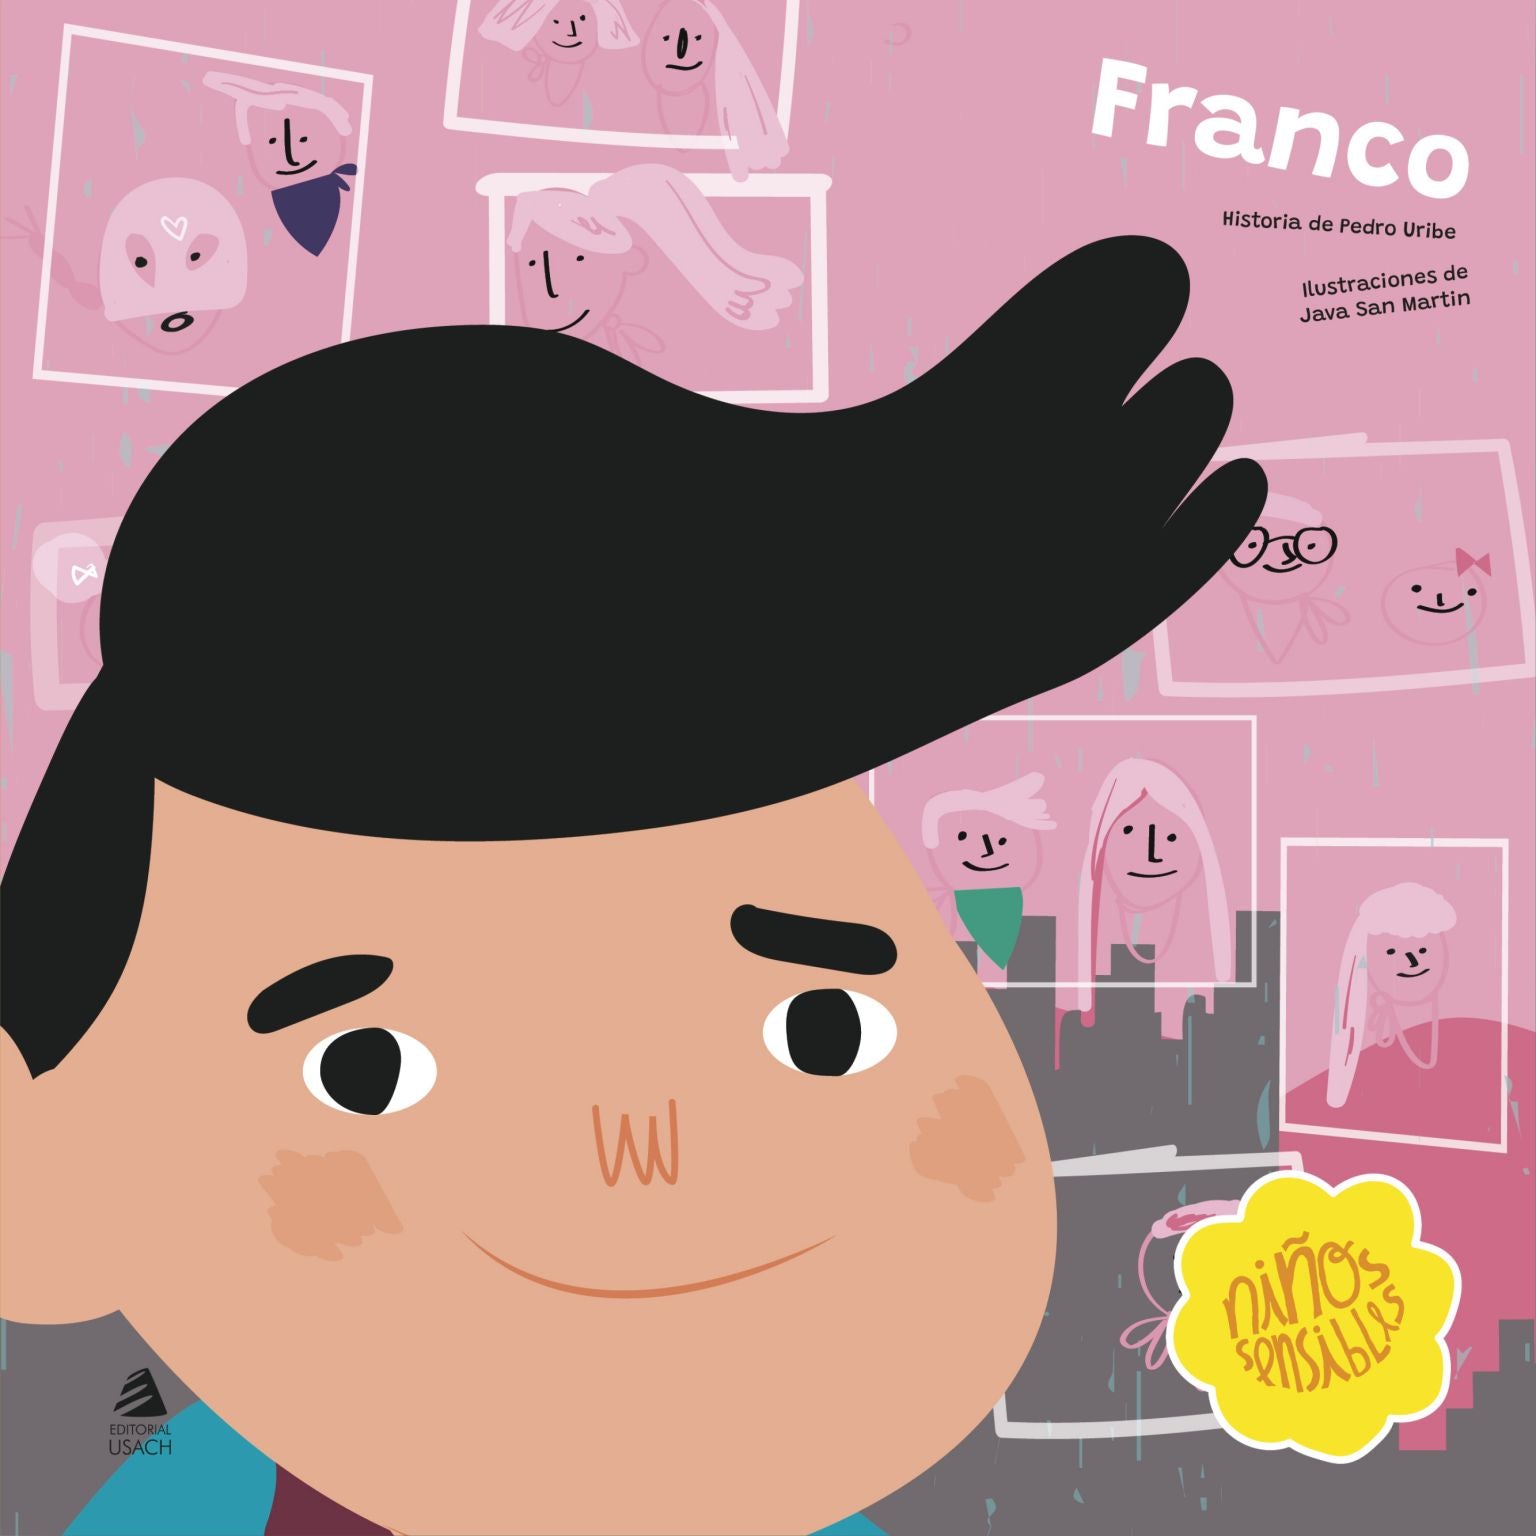 Franco- Colección niños sensibles